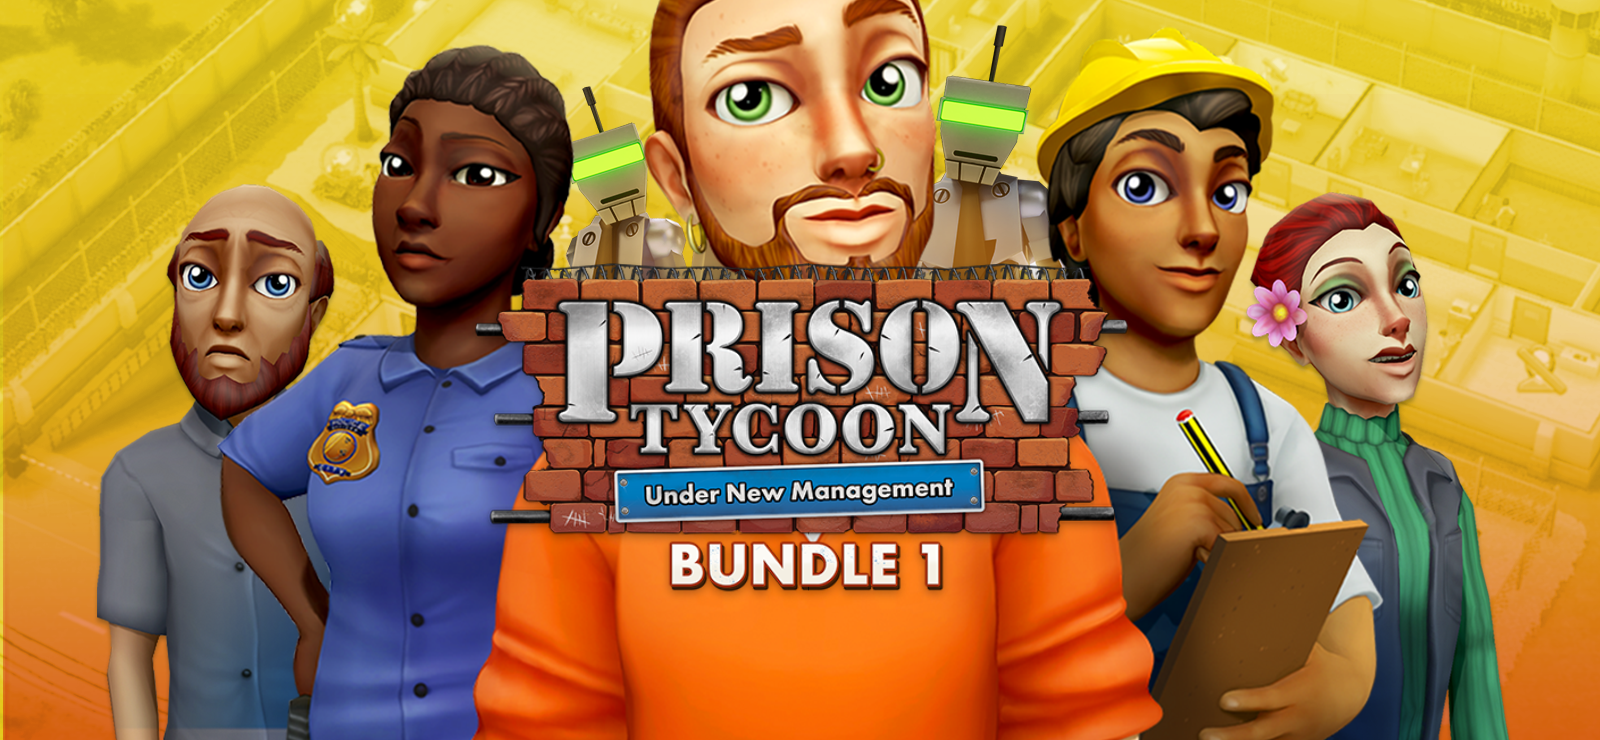 Prison Tycoon: Under New Management - Bundle 1